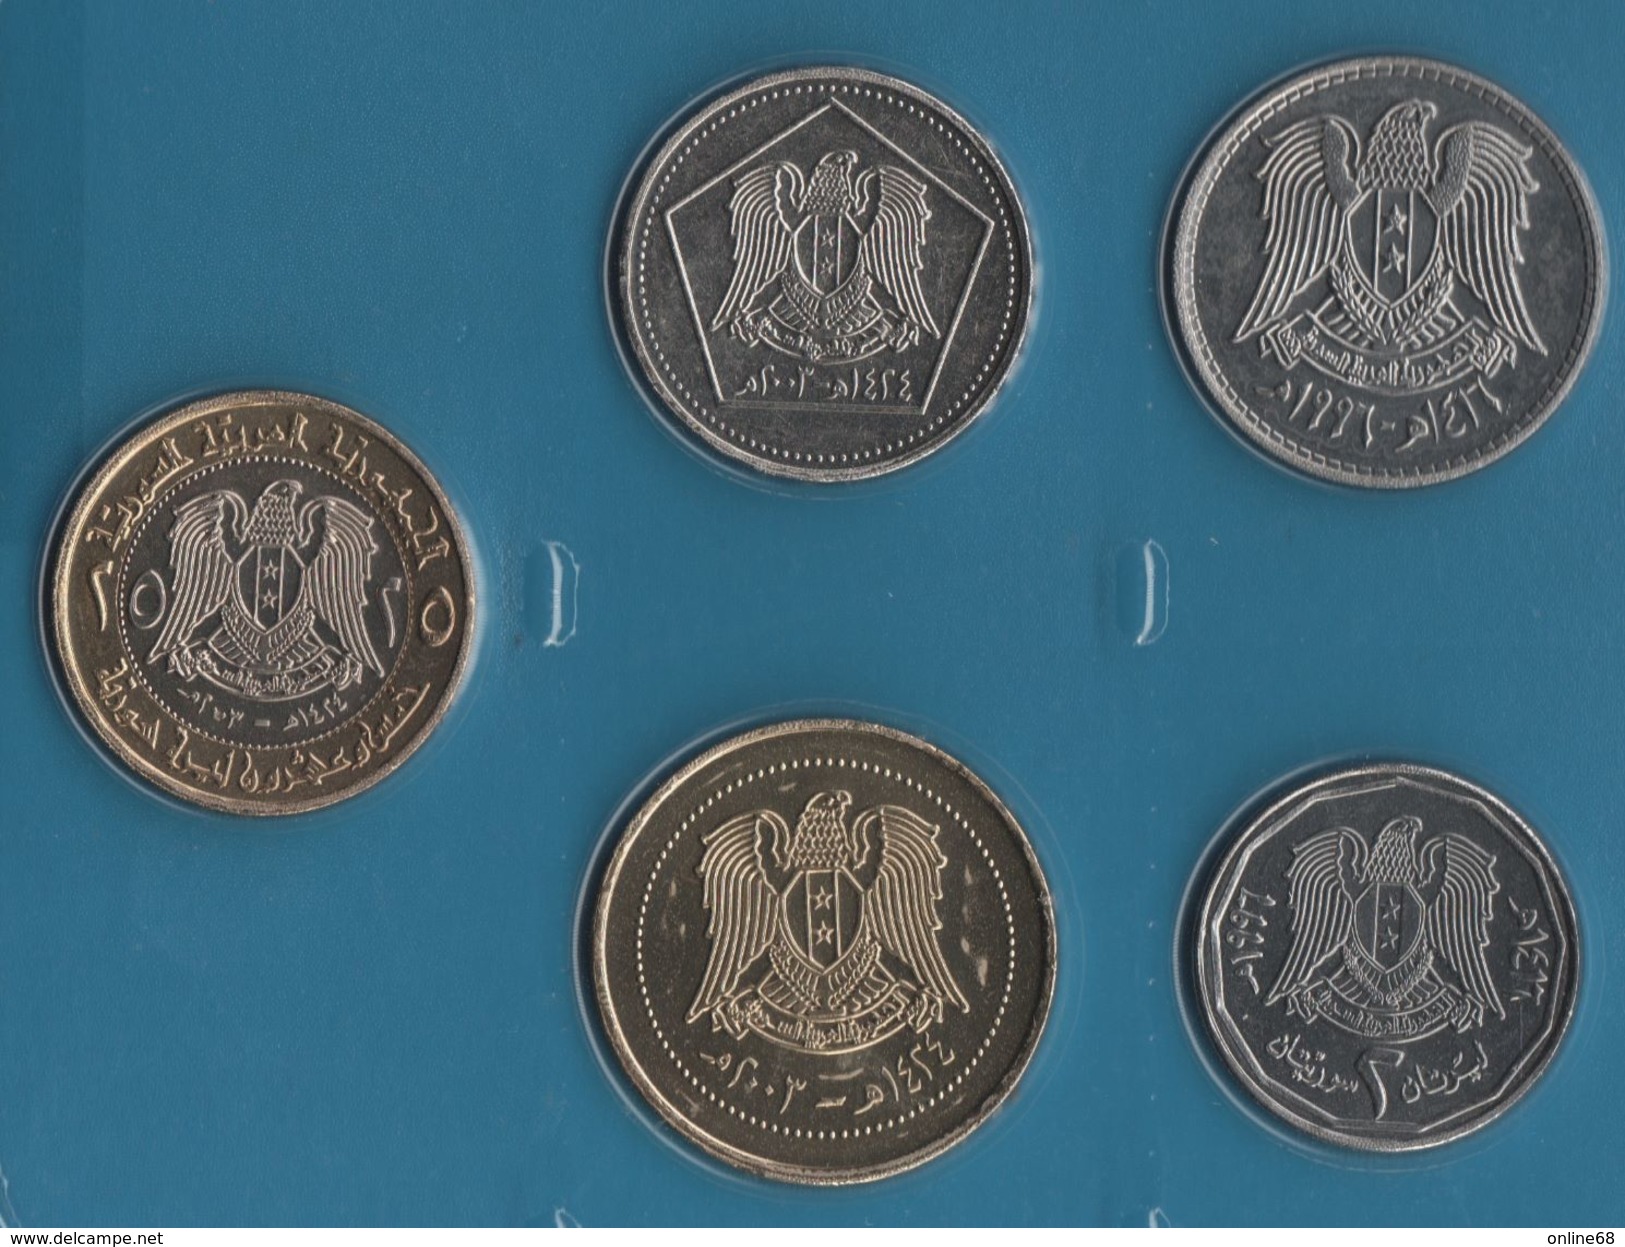 SYRIA COIN SET 5 MONNAIES 1 POUND - 25 POUND 1996 -  2003 - Syria